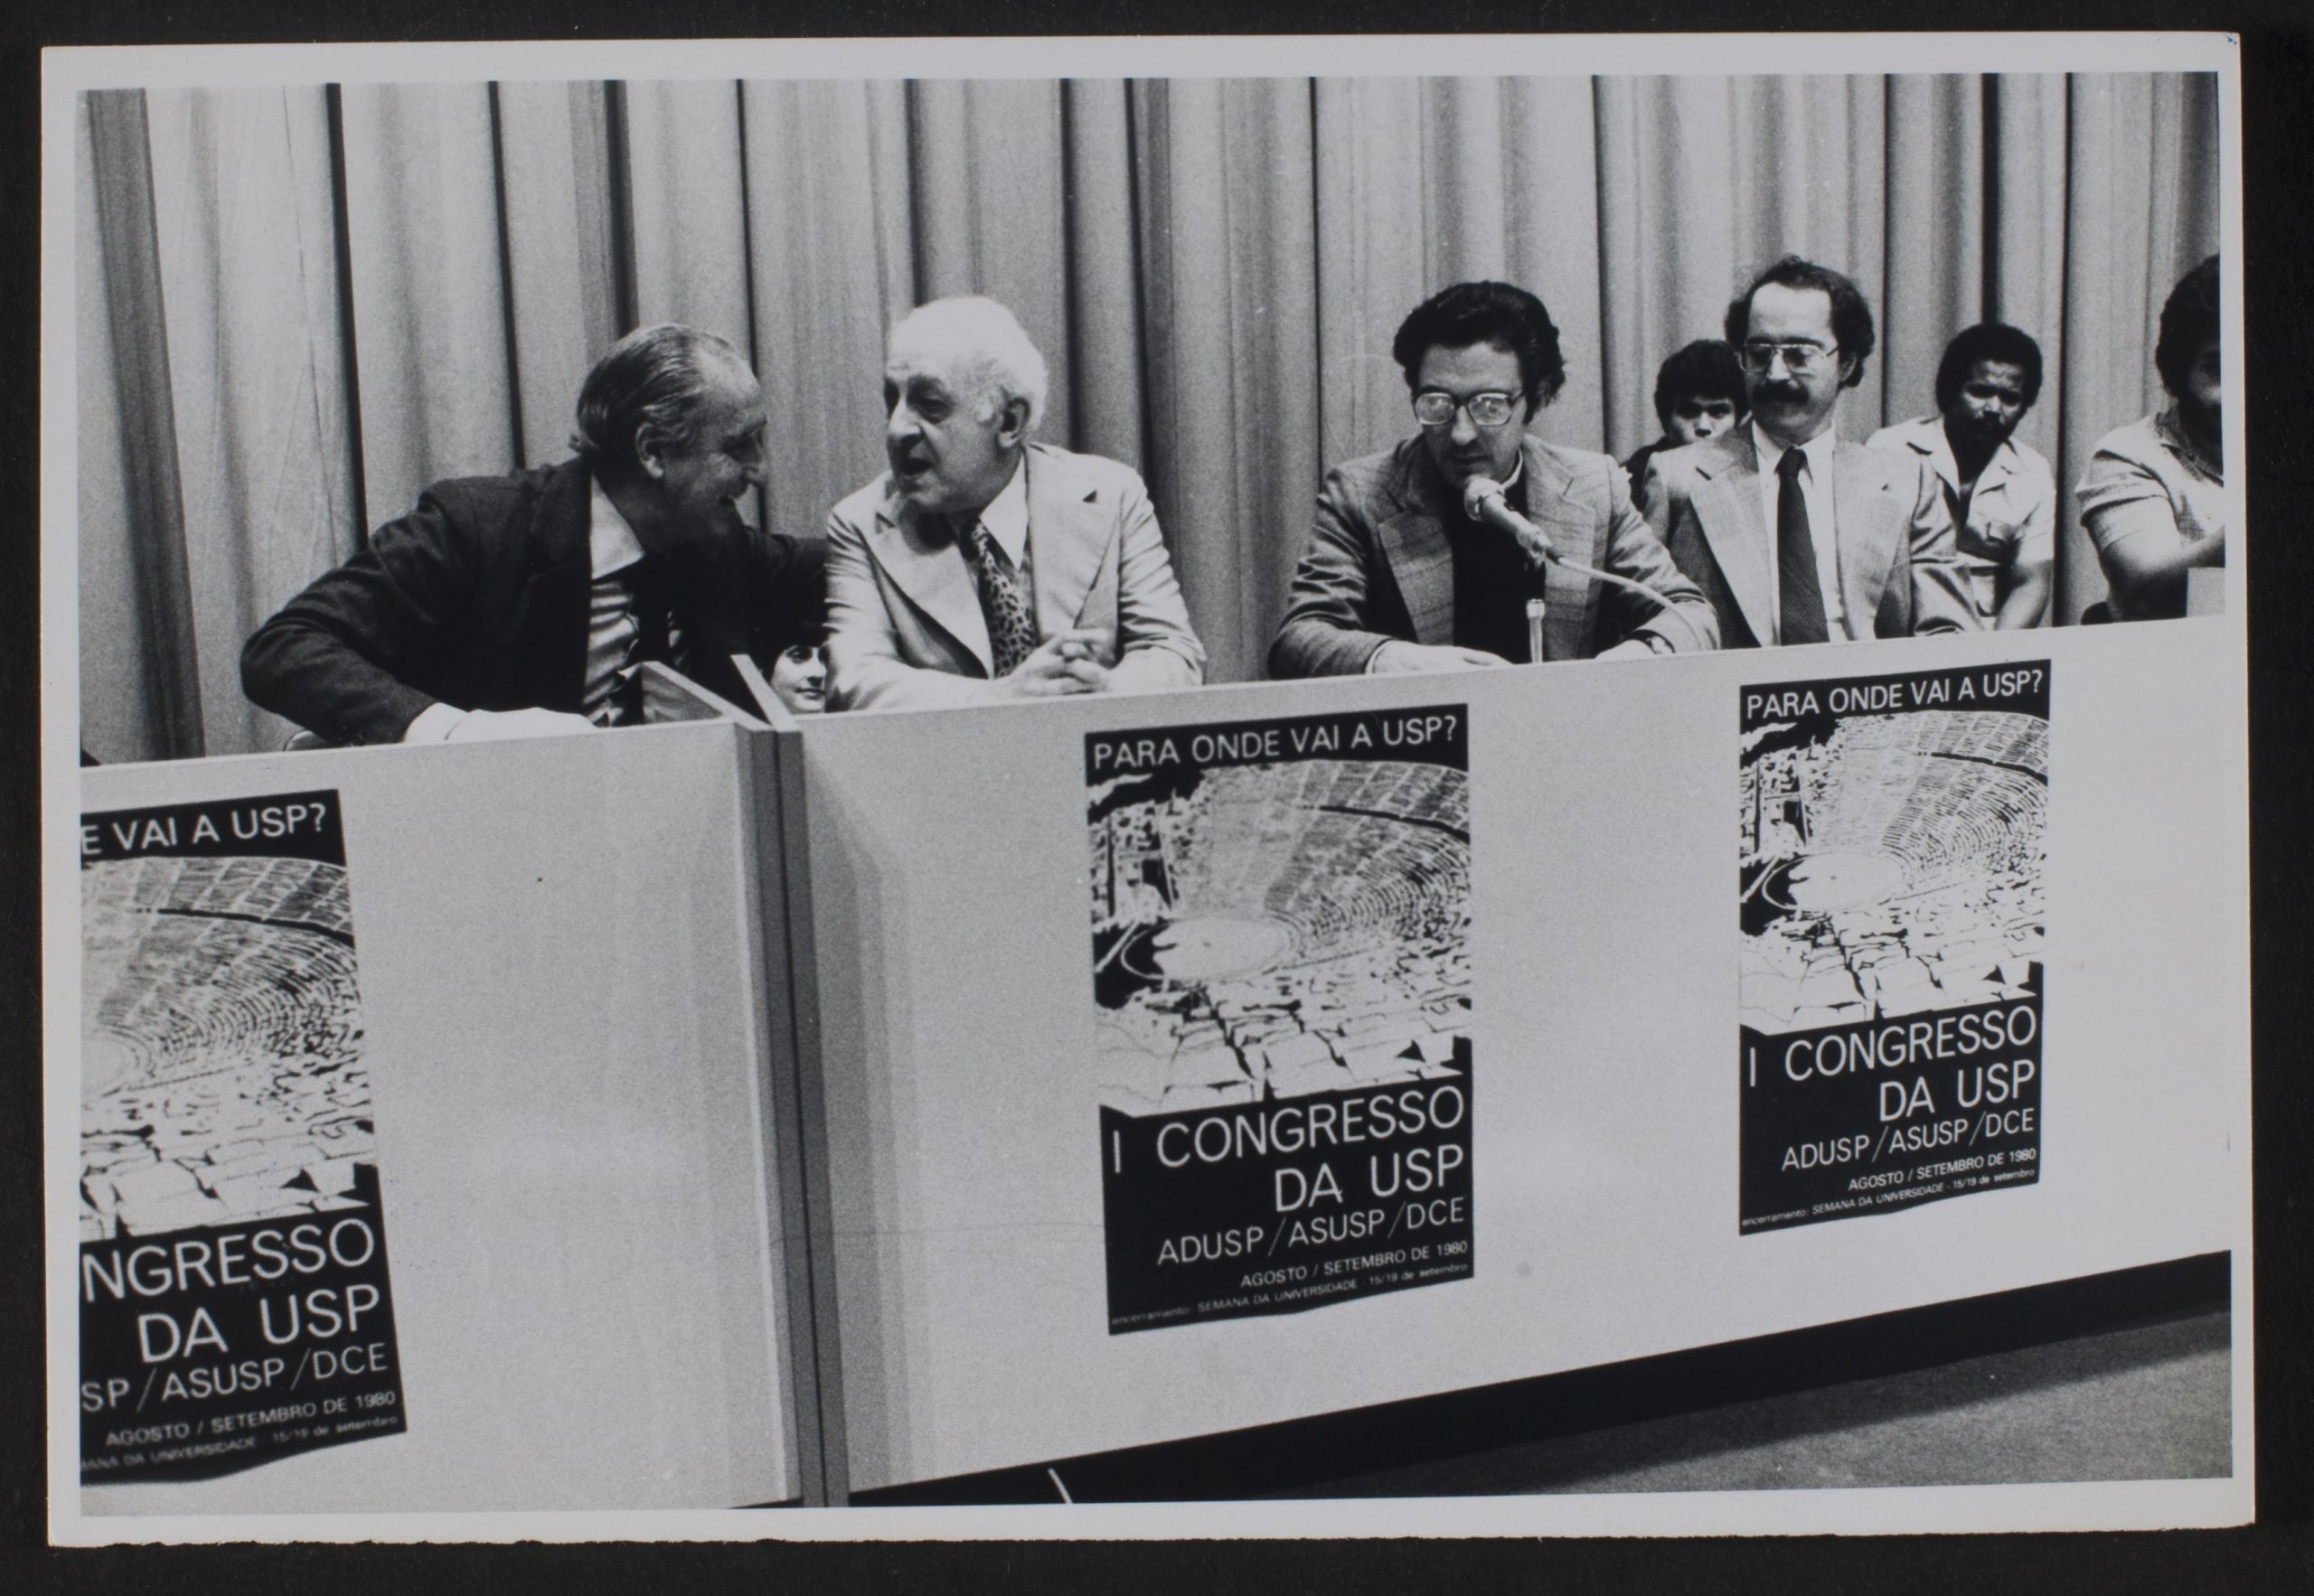 Foto preto e branco com a mesa de debates e 4 homens maduros de terno e gravata sentados. Em frente a mesa figura 3 cartazes iguais onde se lê: I Congresso da USP. Ao fundo da mesa 3 homens mais jovens sentados de camisa.